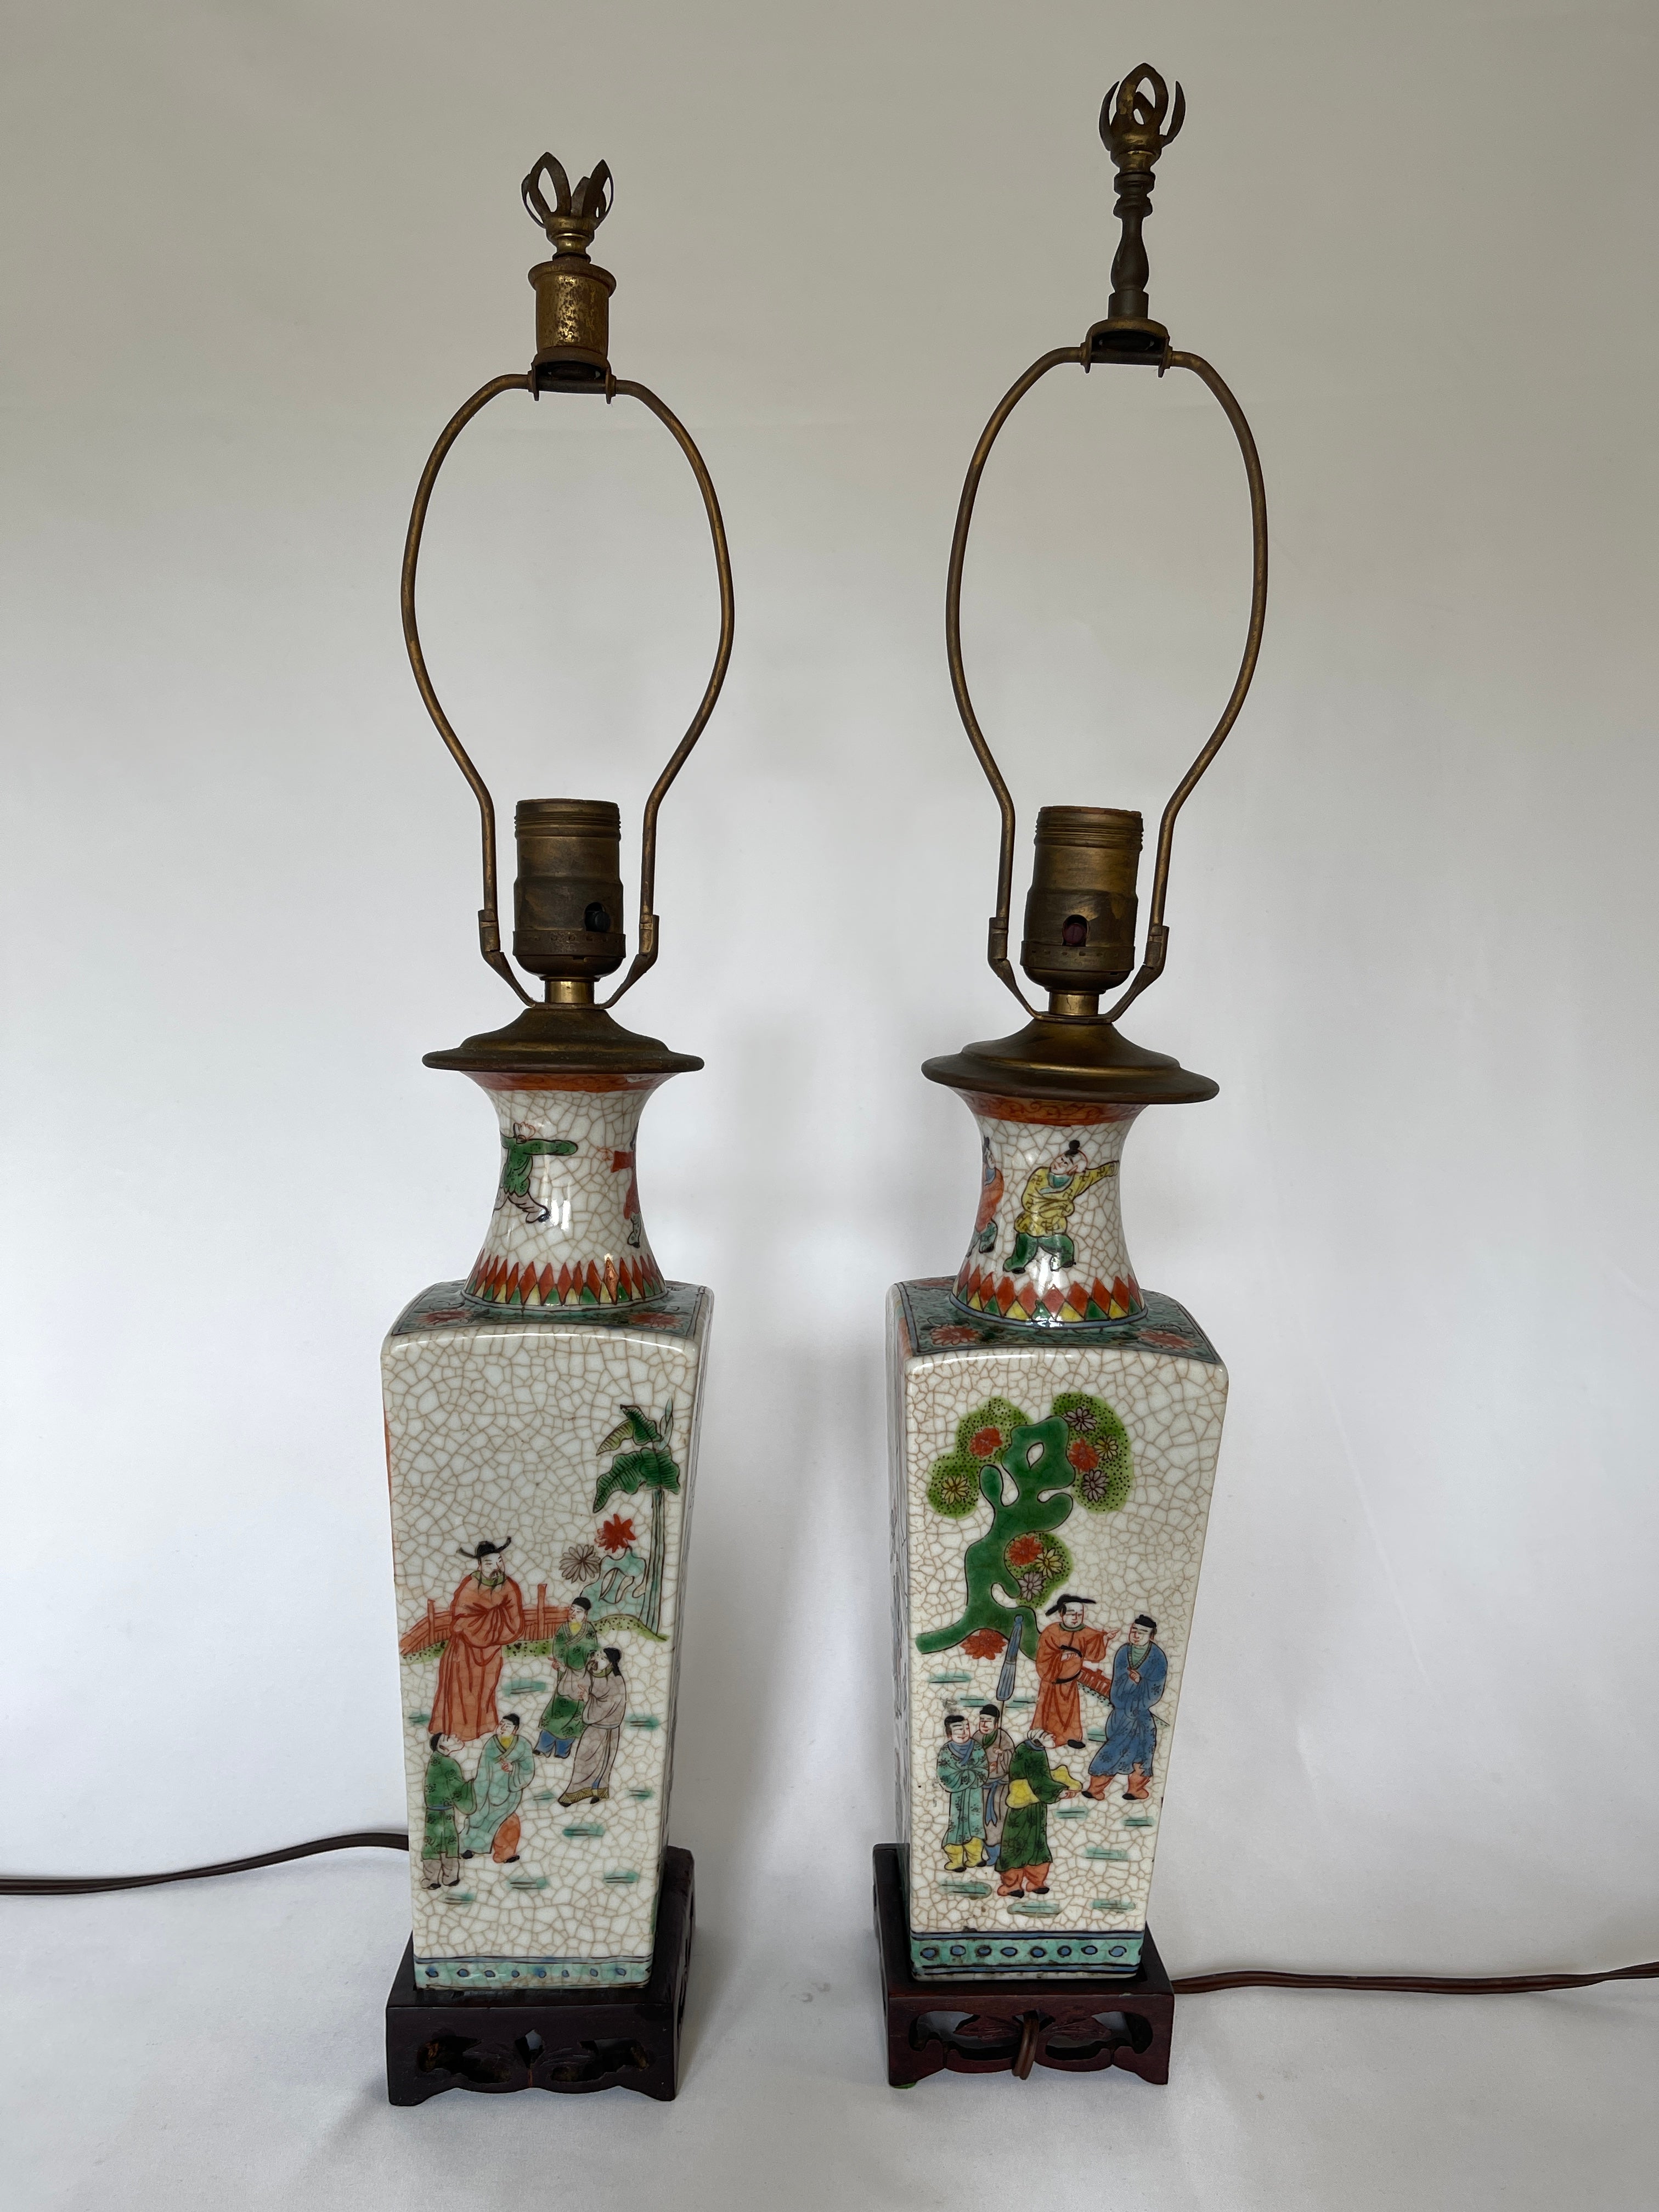 Paire de lampes à vase en céramique craquelée d'exportation chinoise du 19e siècle sur des bases carrées en bois dur sculpté. Entièrement décorées à la main, elles sont toutes légèrement différentes les unes des autres. 
Les lampes conservent le